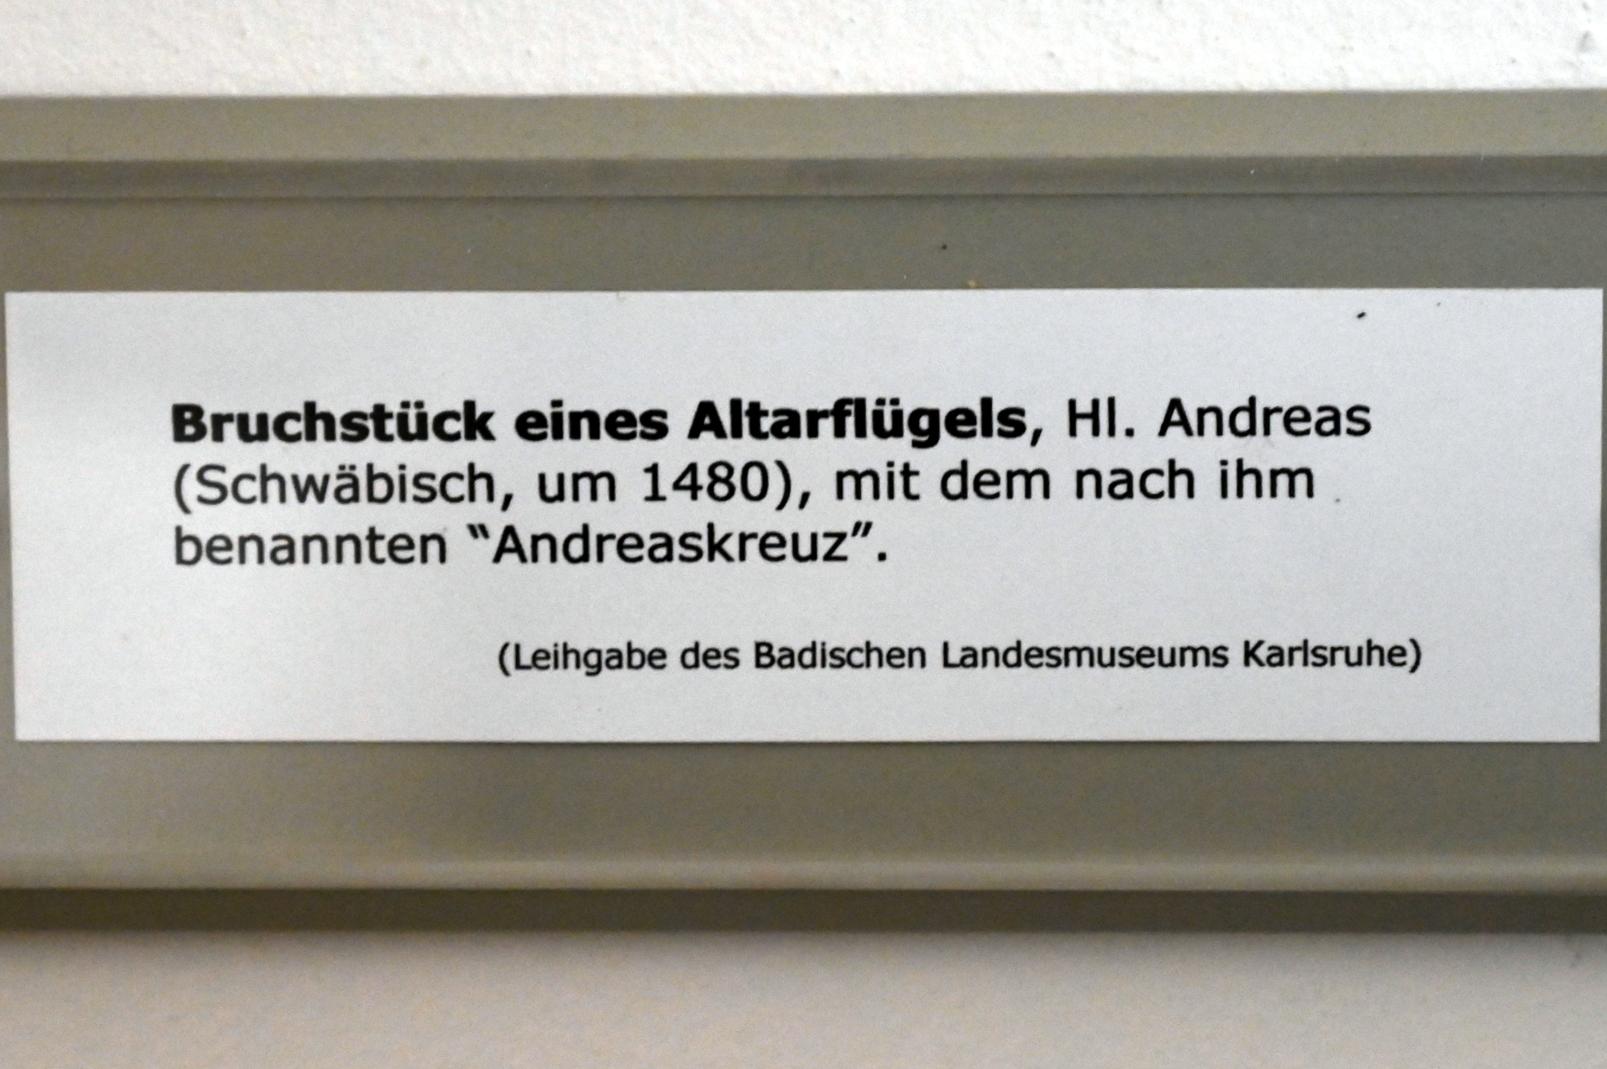 Bruchstück eines Altarflügels, Überlingen, Städtisches Museum, Gotisches Zimmer, um 1480, Bild 2/2